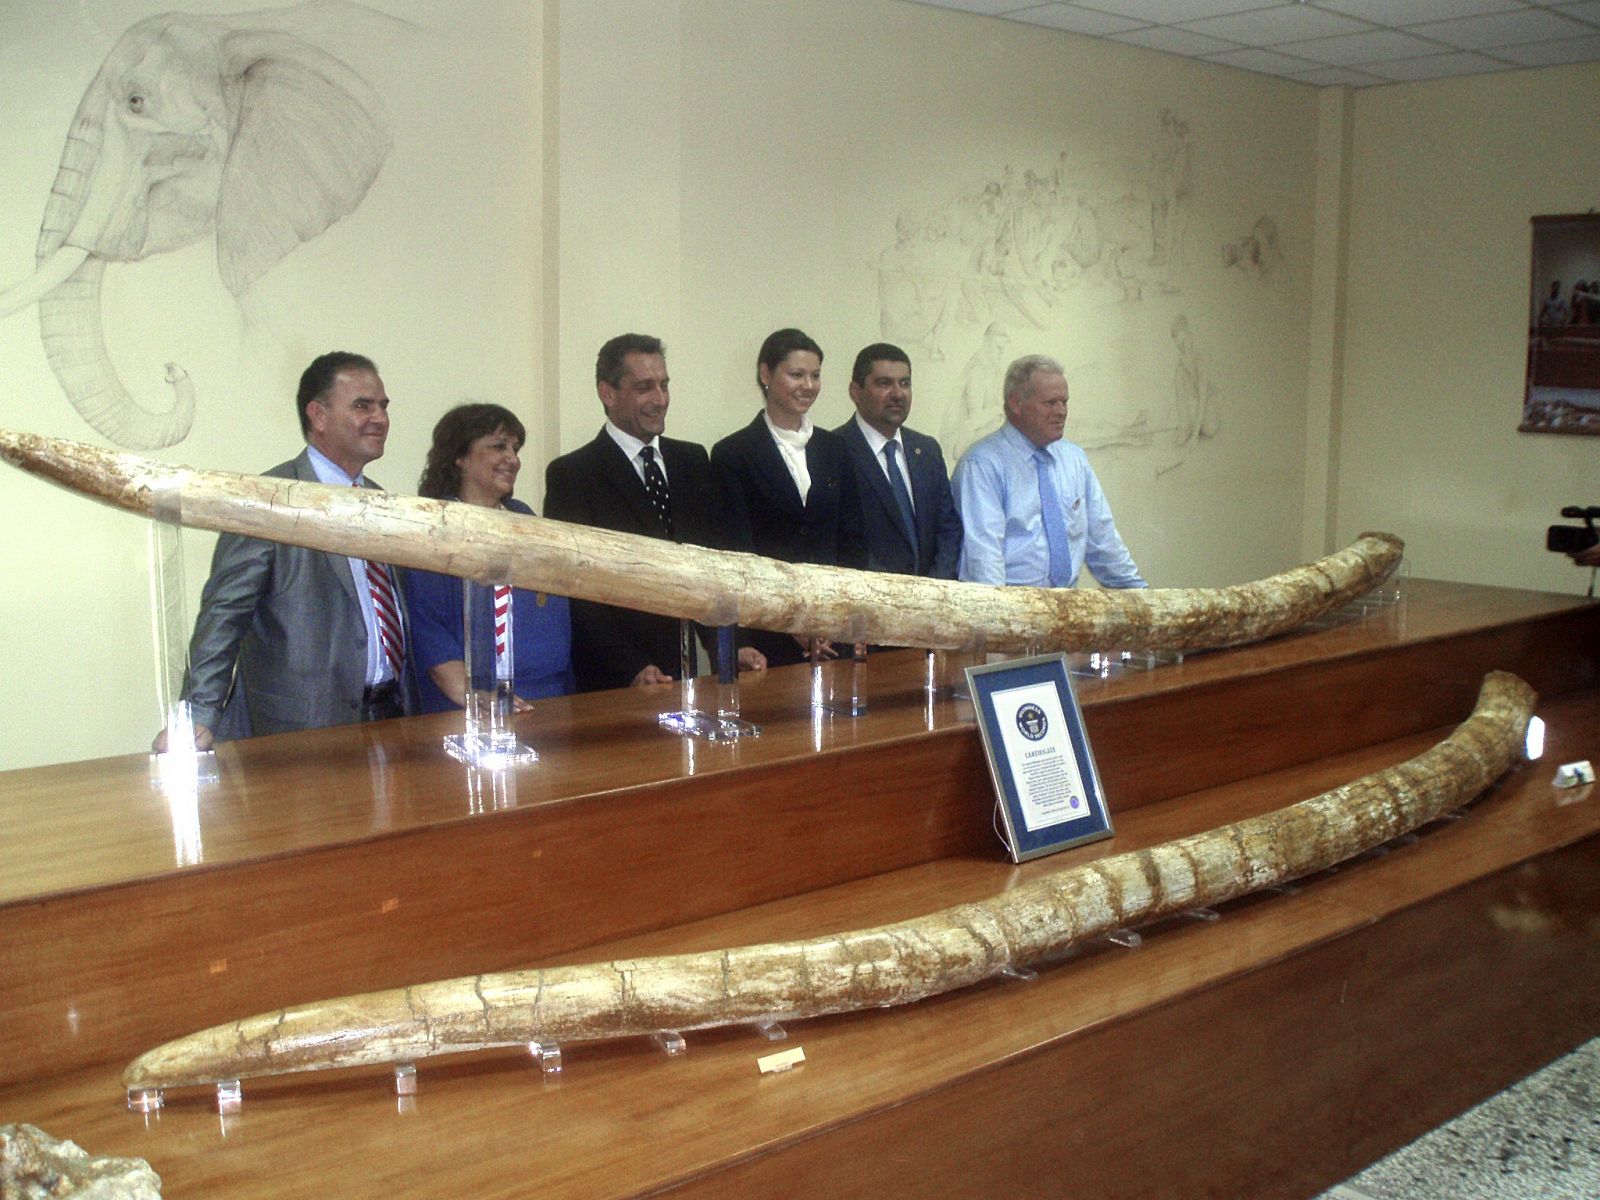 En la imagen, las autoridades locales y la representante del Libro Guinness de los Records posan junto a los colmillos más largos del mundo.